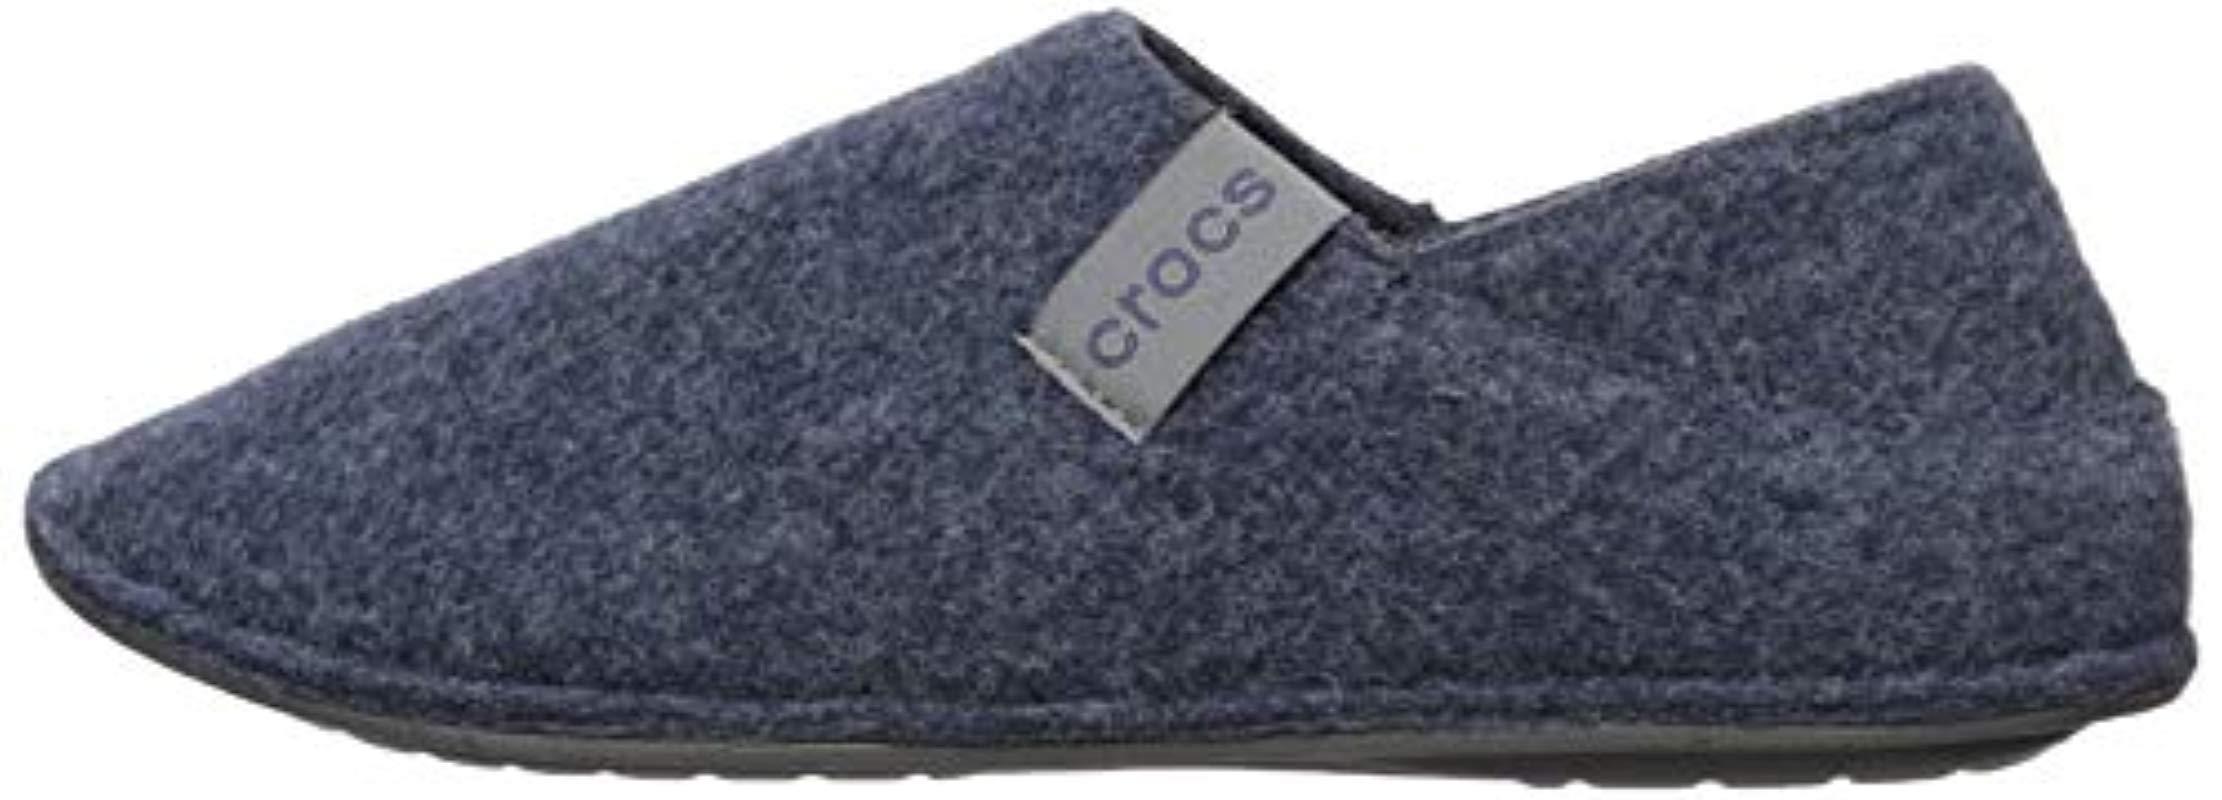 wool crocs